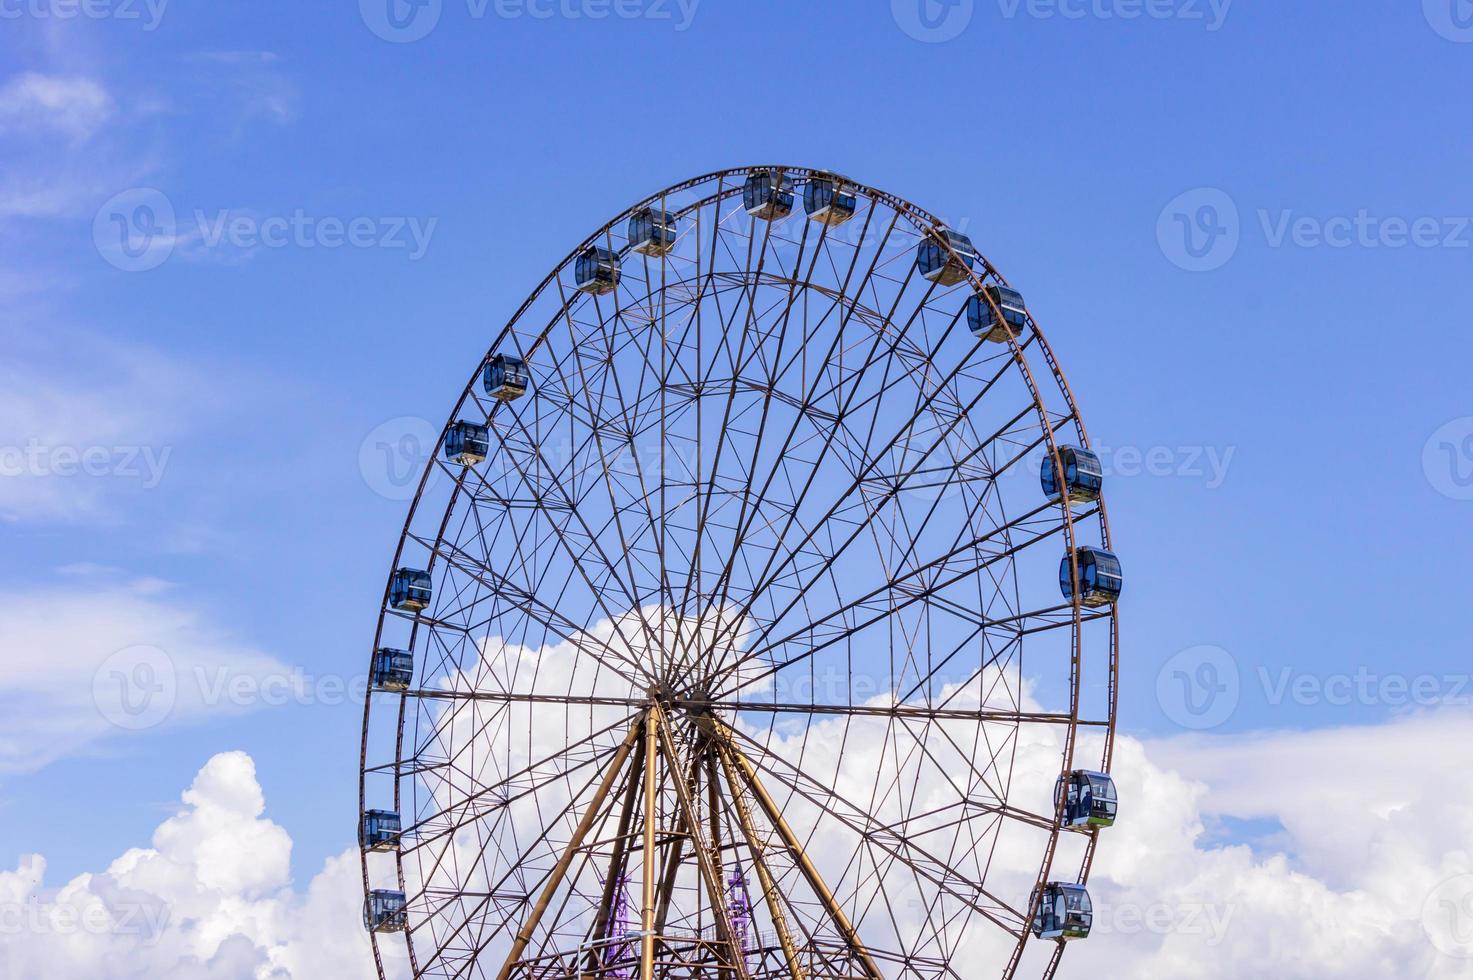 großes Atraktions-Riesenrad auf dem Hintergrund eines schönen blauen Himmels mit Wolken foto